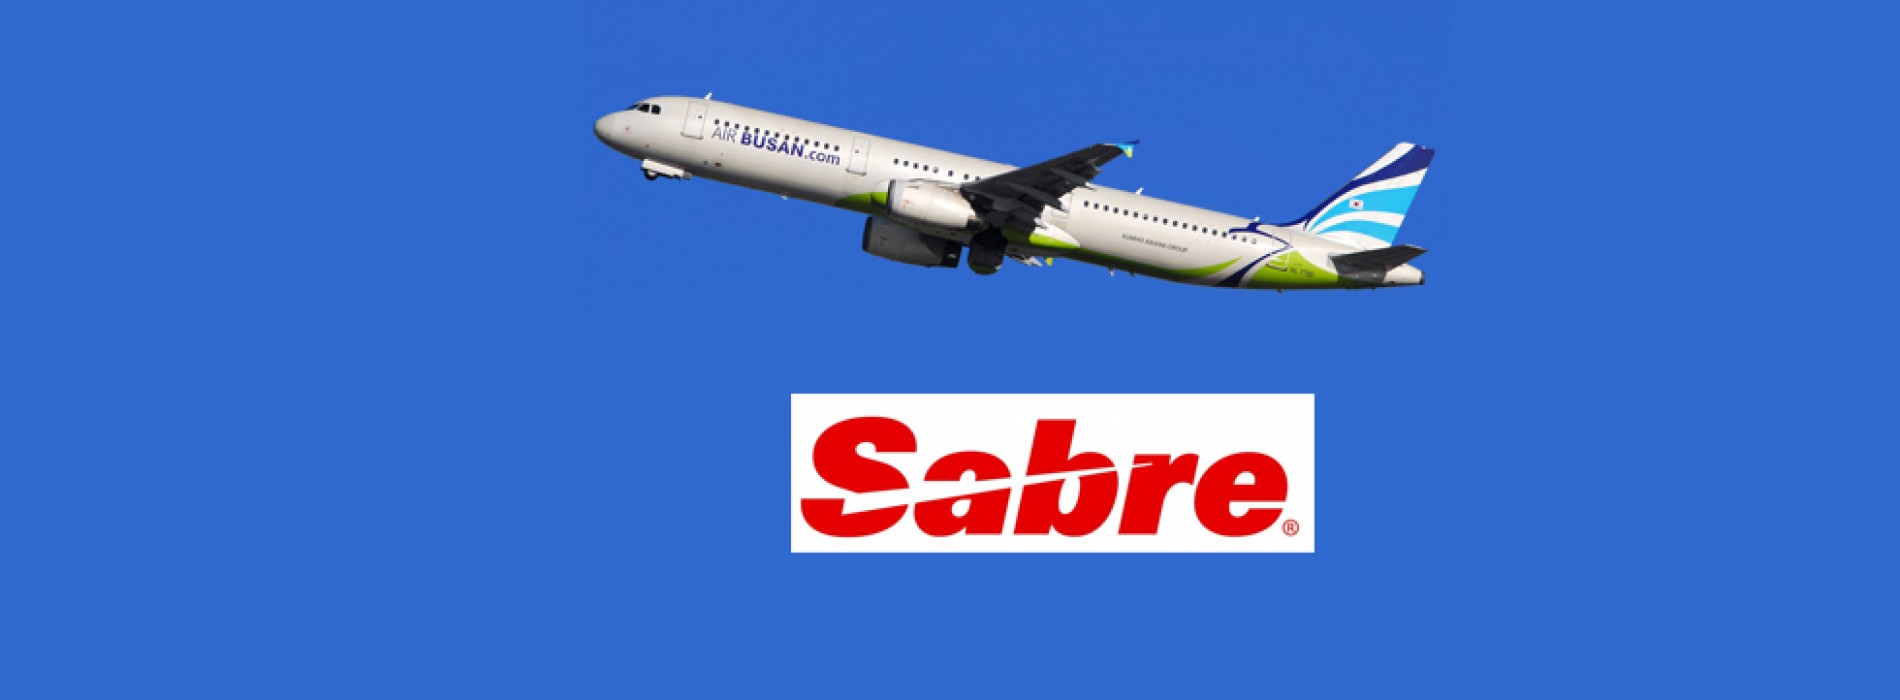 Air Busan renews global partnership with Sabre